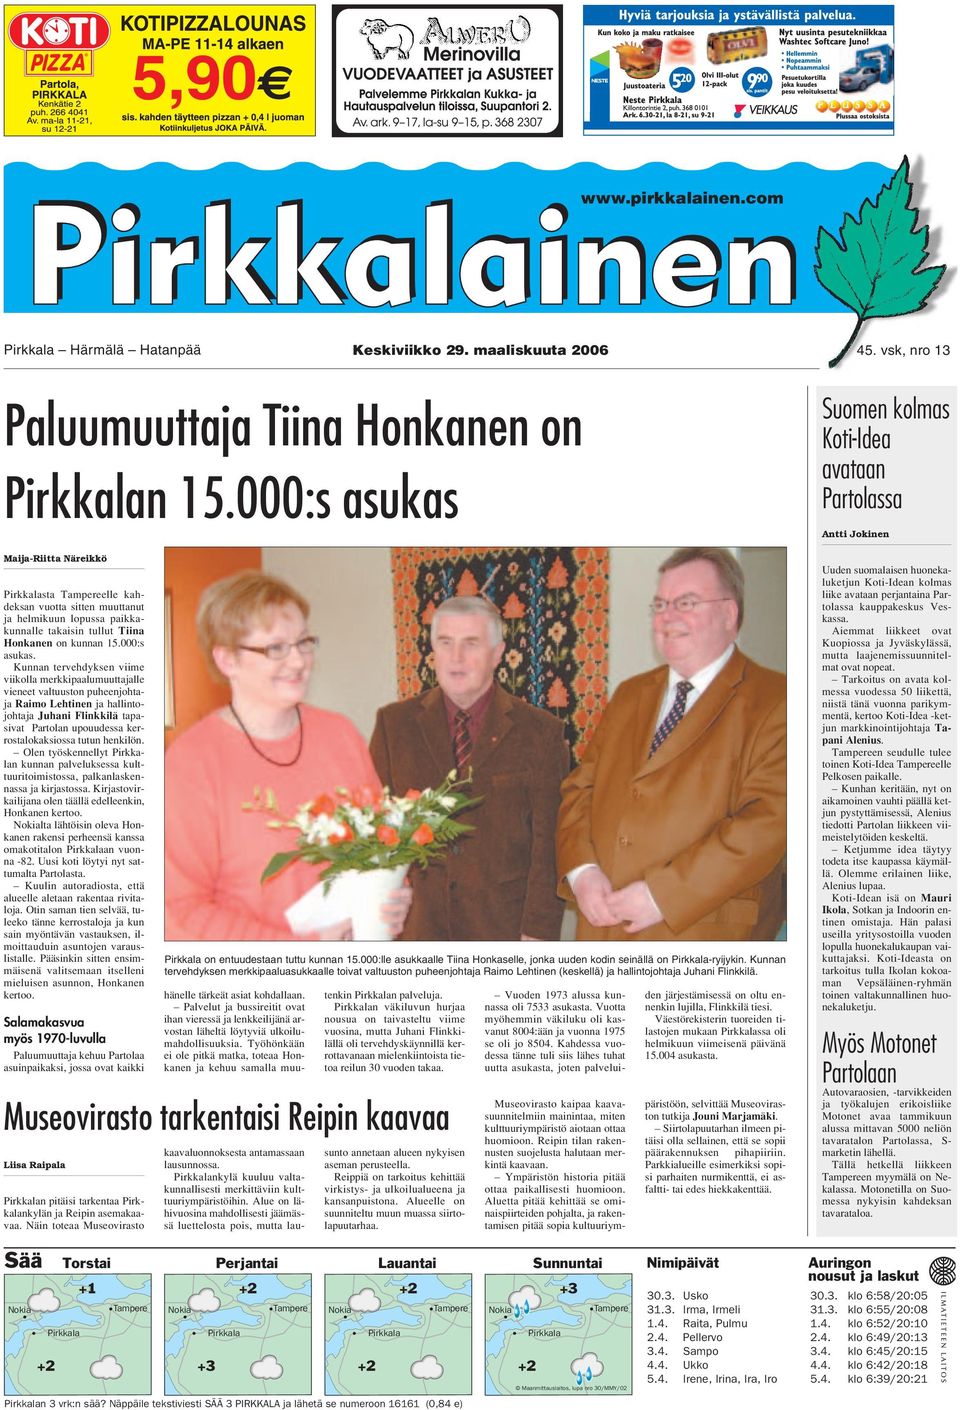 Maija-Riitta Näreikkö Pirkkalasta Tampereelle kahdeksan vuotta sitten muuttanut ja helmikuun lopussa paikkakunnalle takaisin tullut Tiina Honkanen on kunnan 15.000:s asukas.